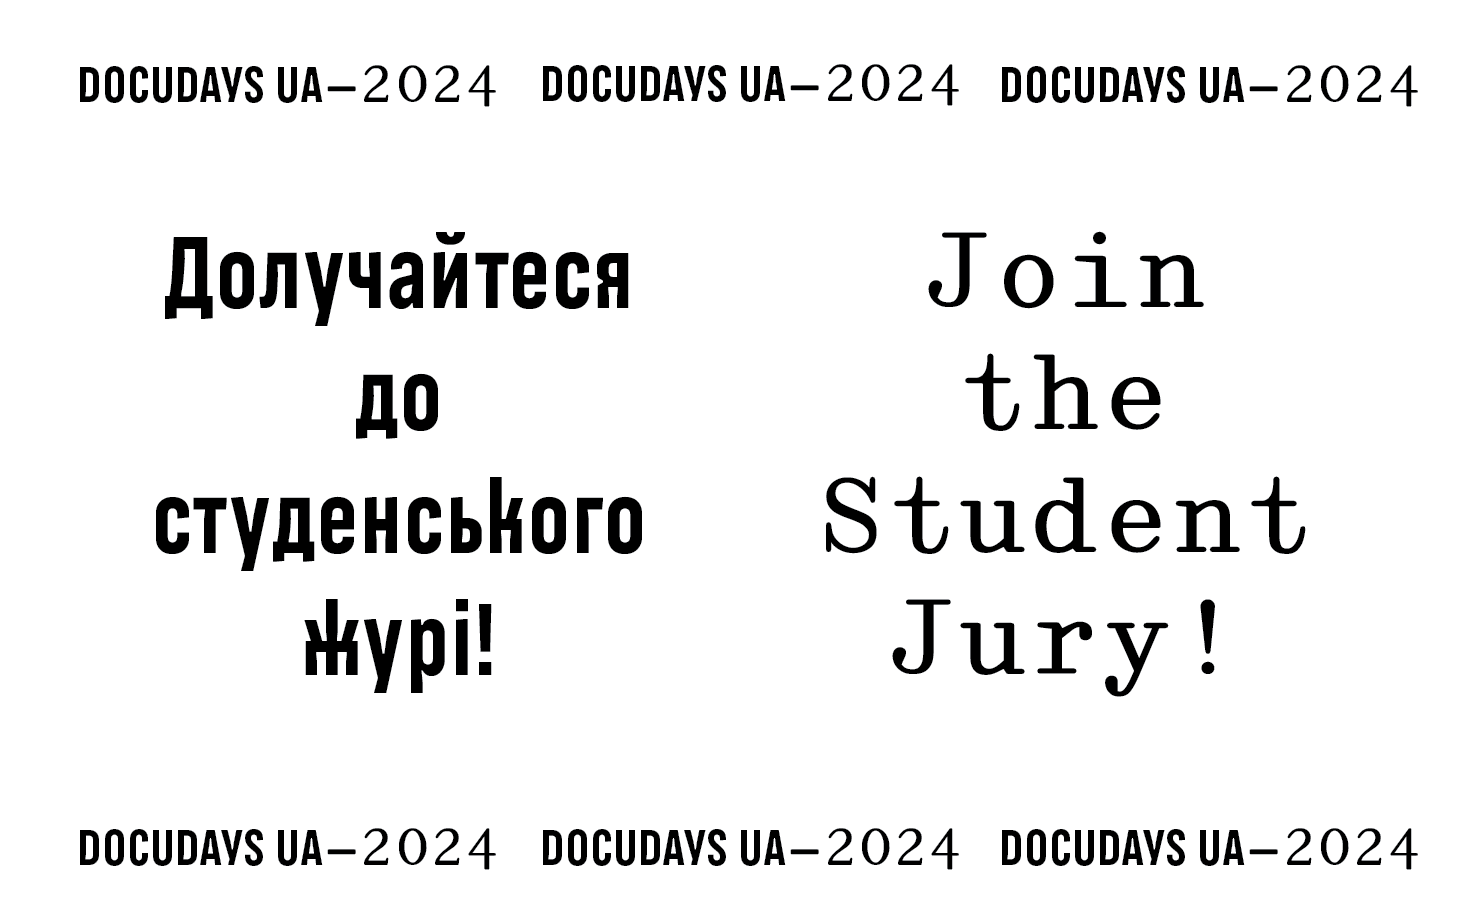 Міжнародний кінофестиваль DOCUDAYS UA-2024 оголосив відбір кандидатів до складу студентського журі